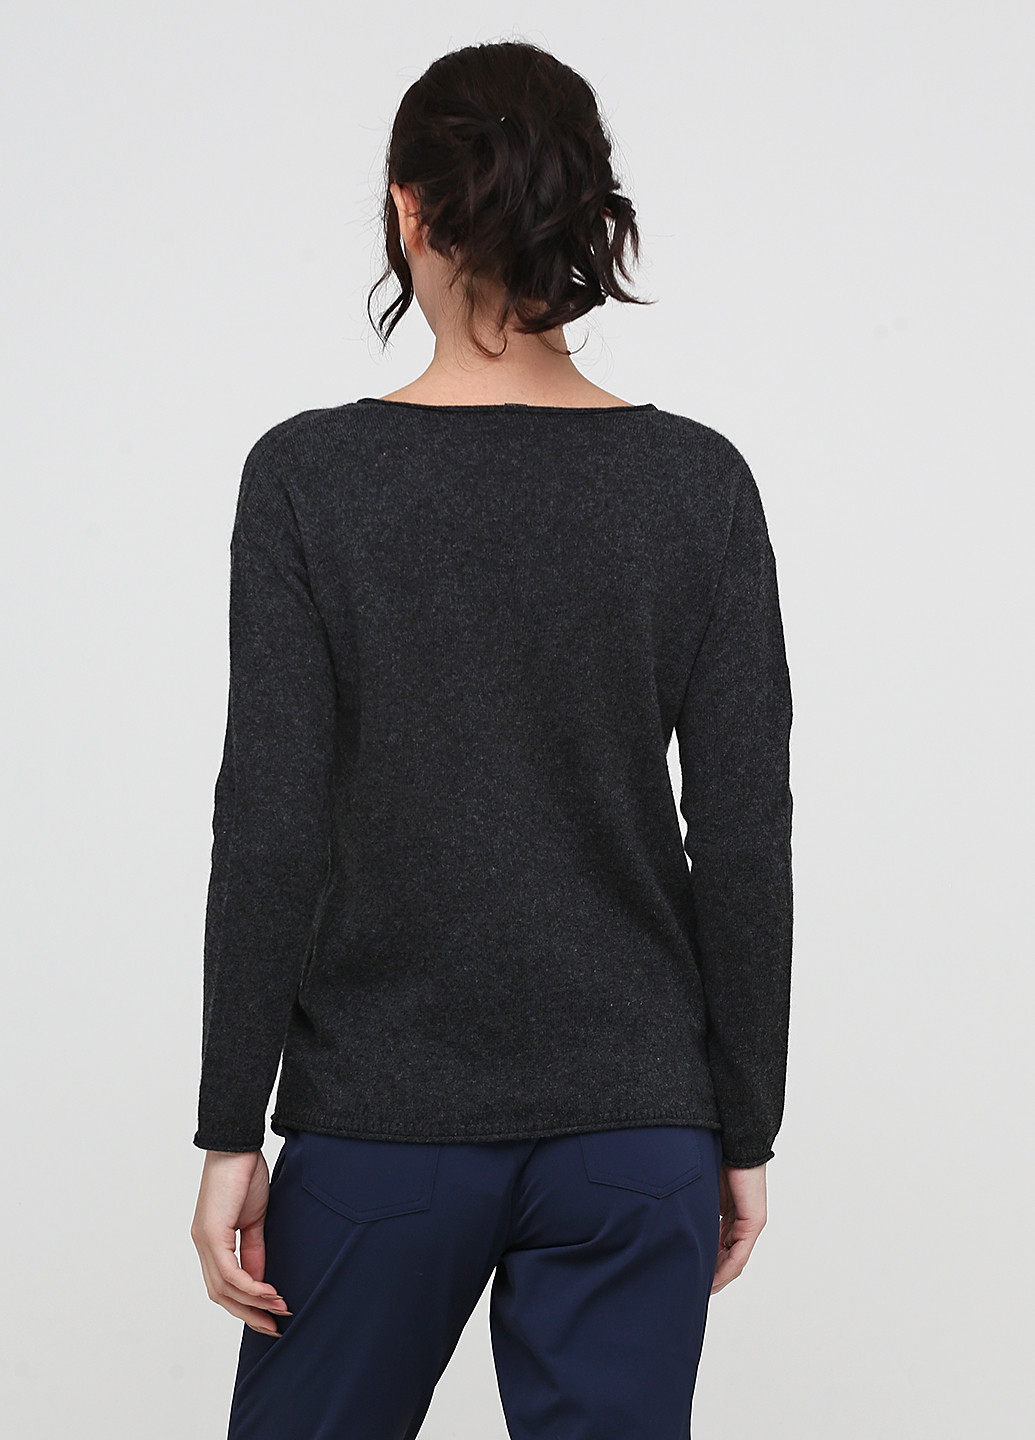 Темно-серый демисезонный пуловер пуловер Esmara